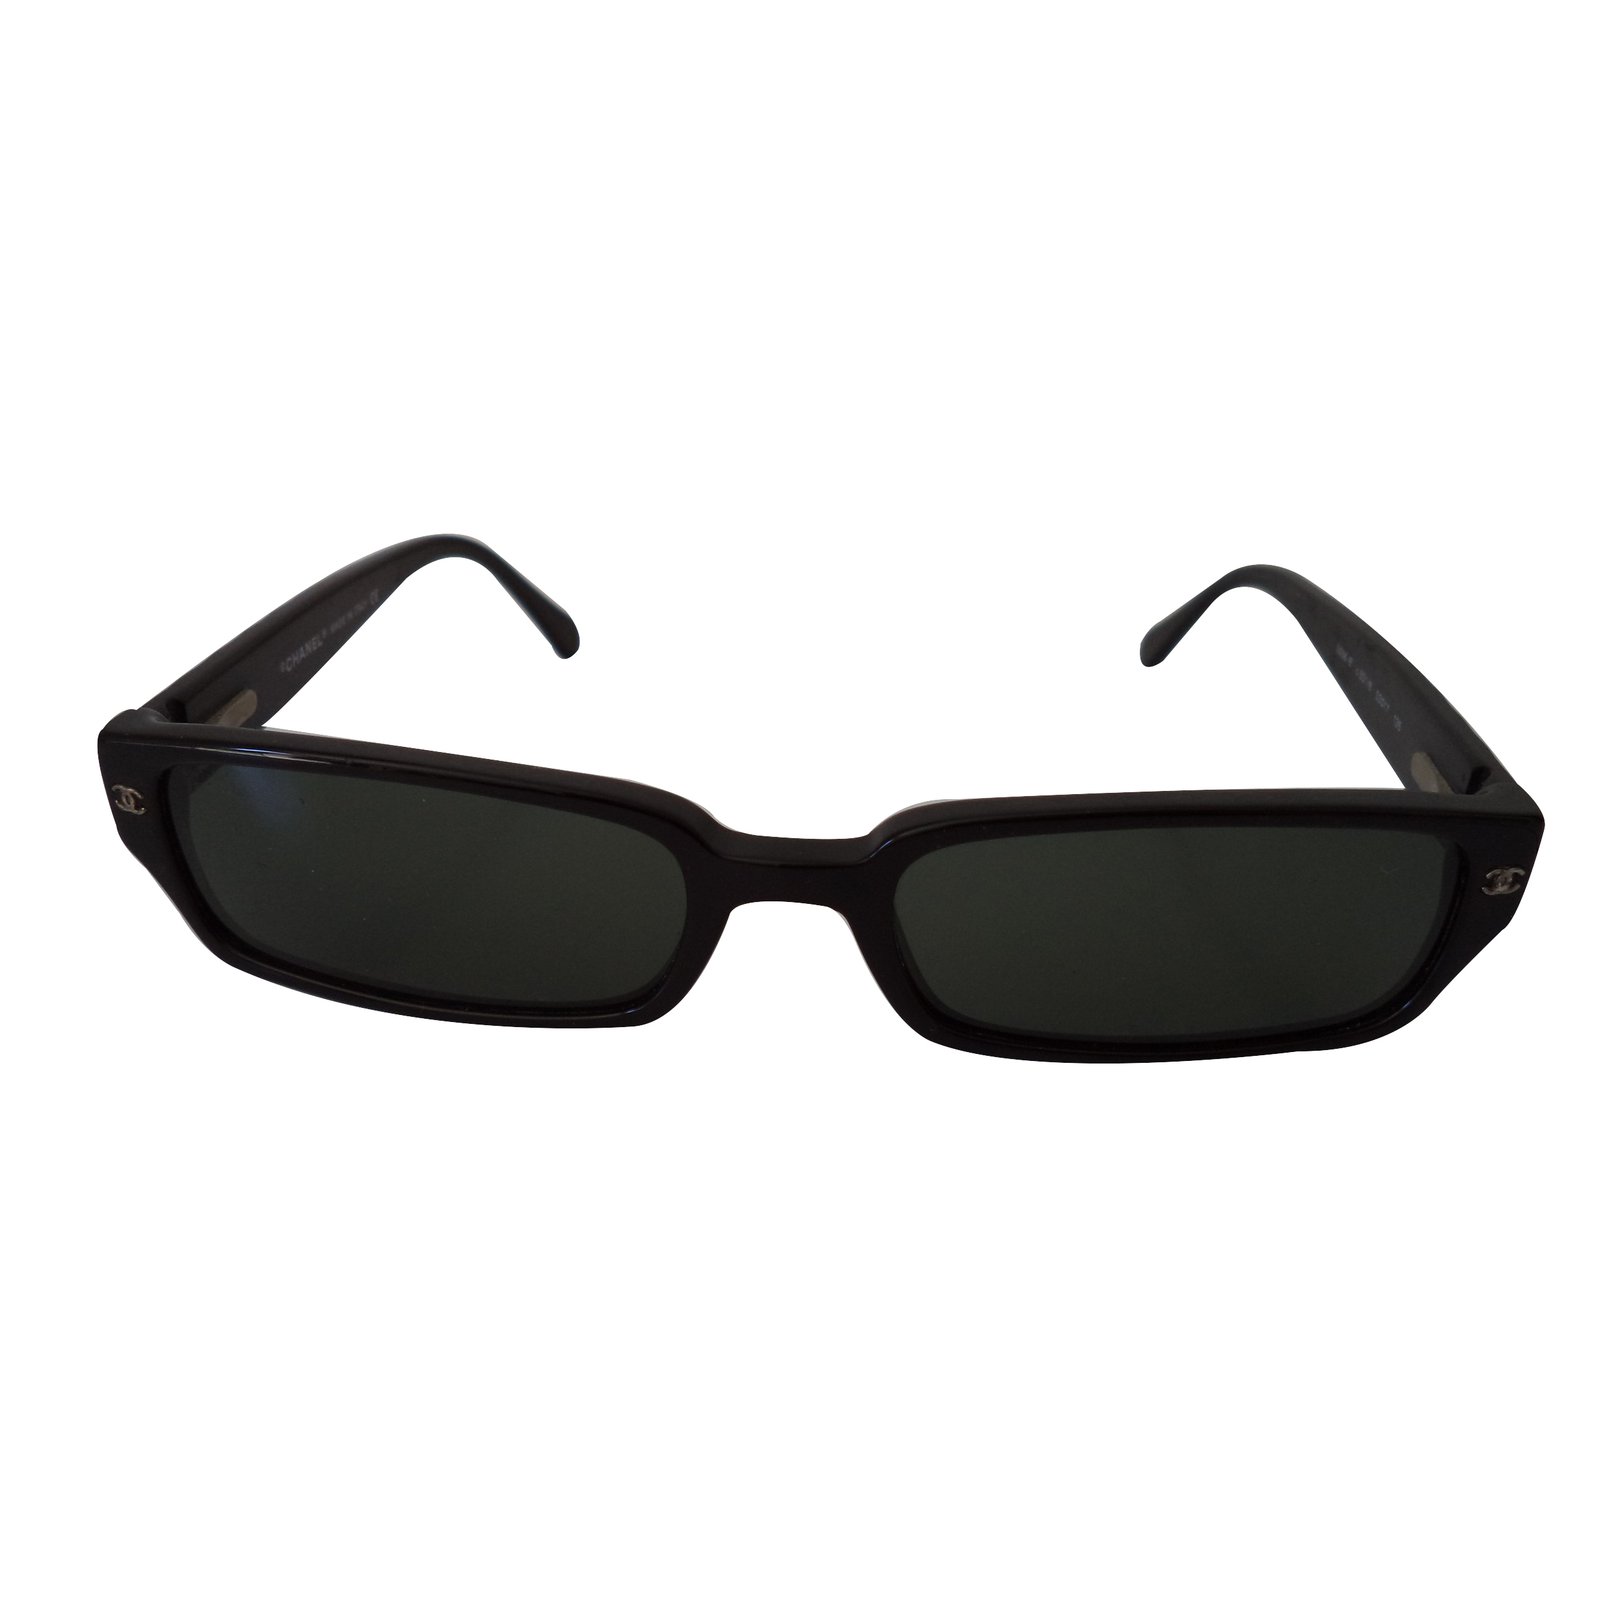 Chia sẻ hơn 54 về chanel rectangle sunglasses a71280 black mới nhất   cdgdbentreeduvn